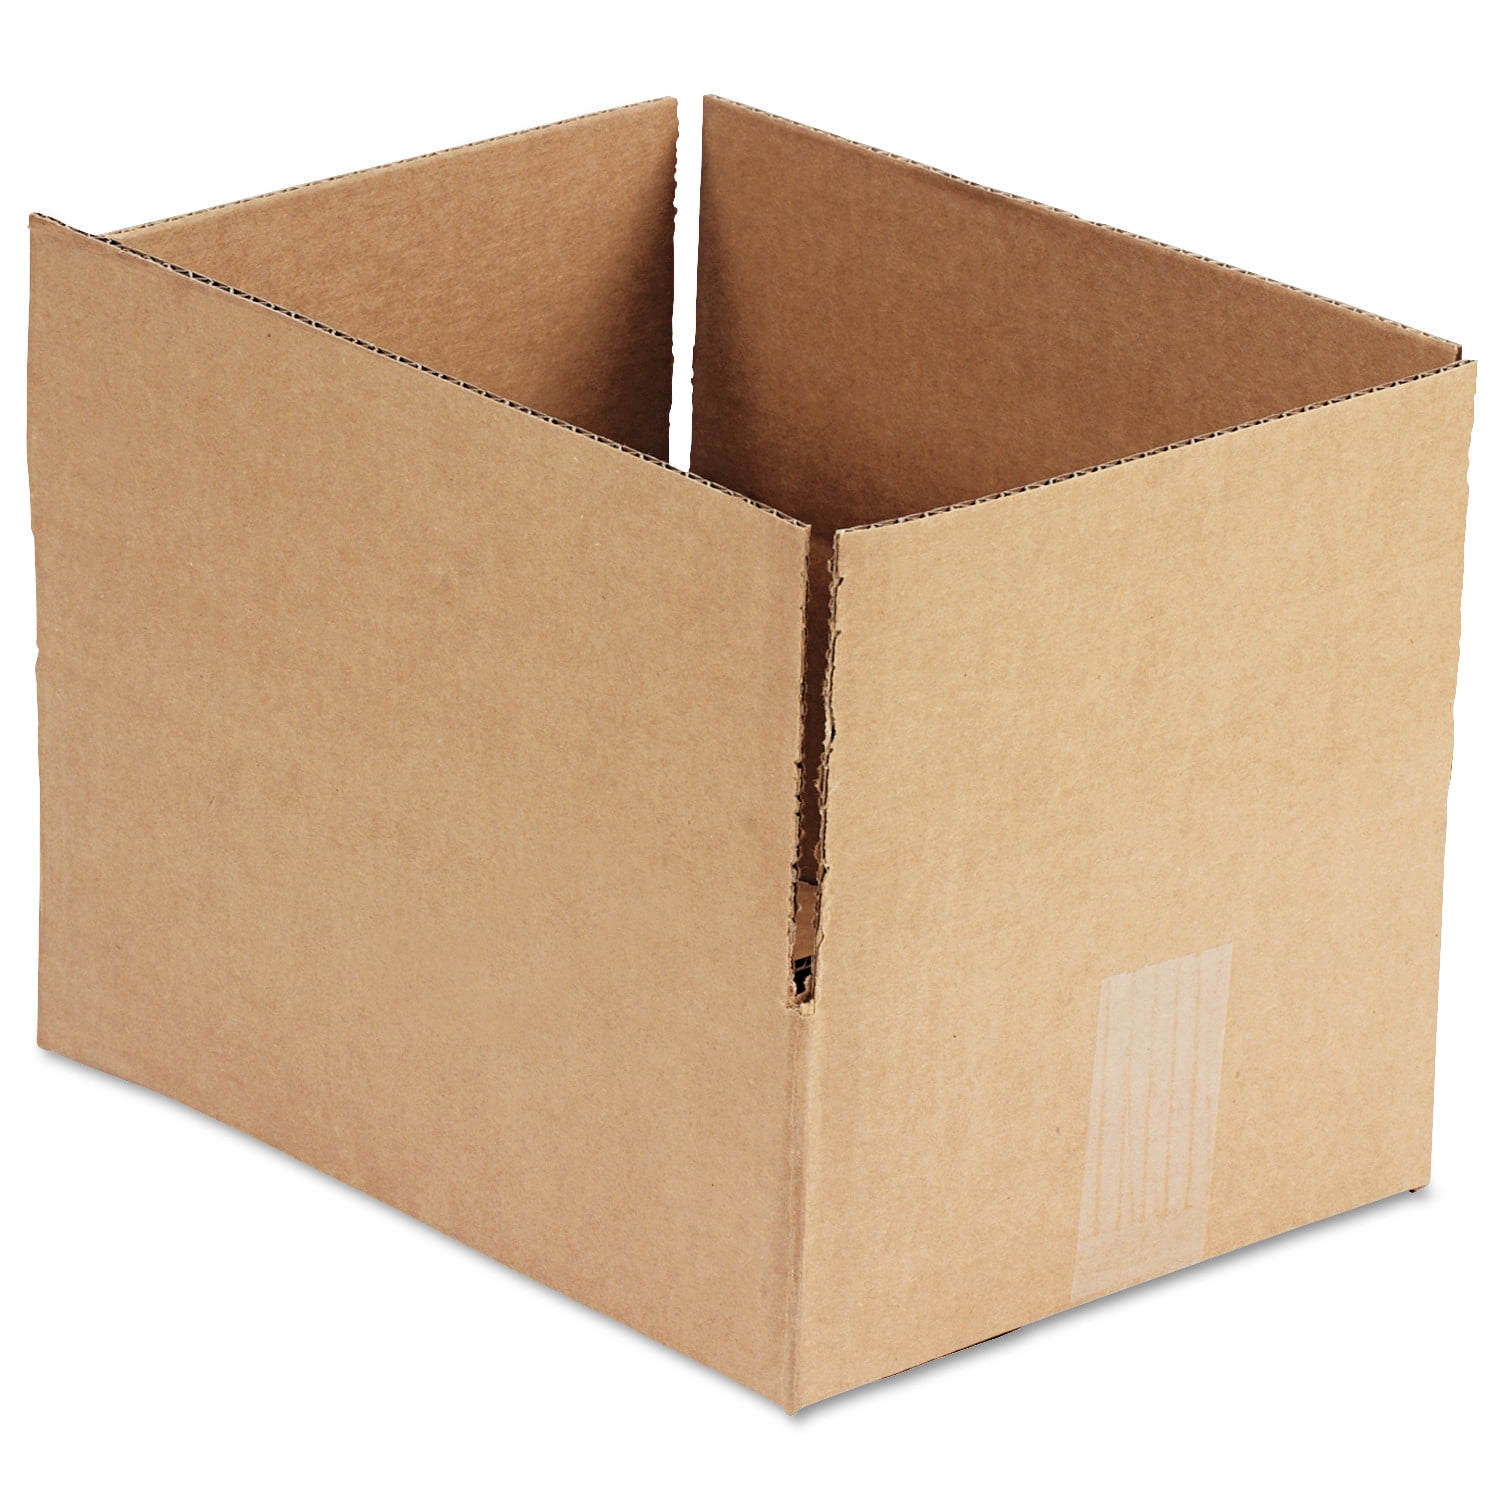 5 Postal Storage Cardboard Boxes 11 x 9.5 x 5.5" S/W 